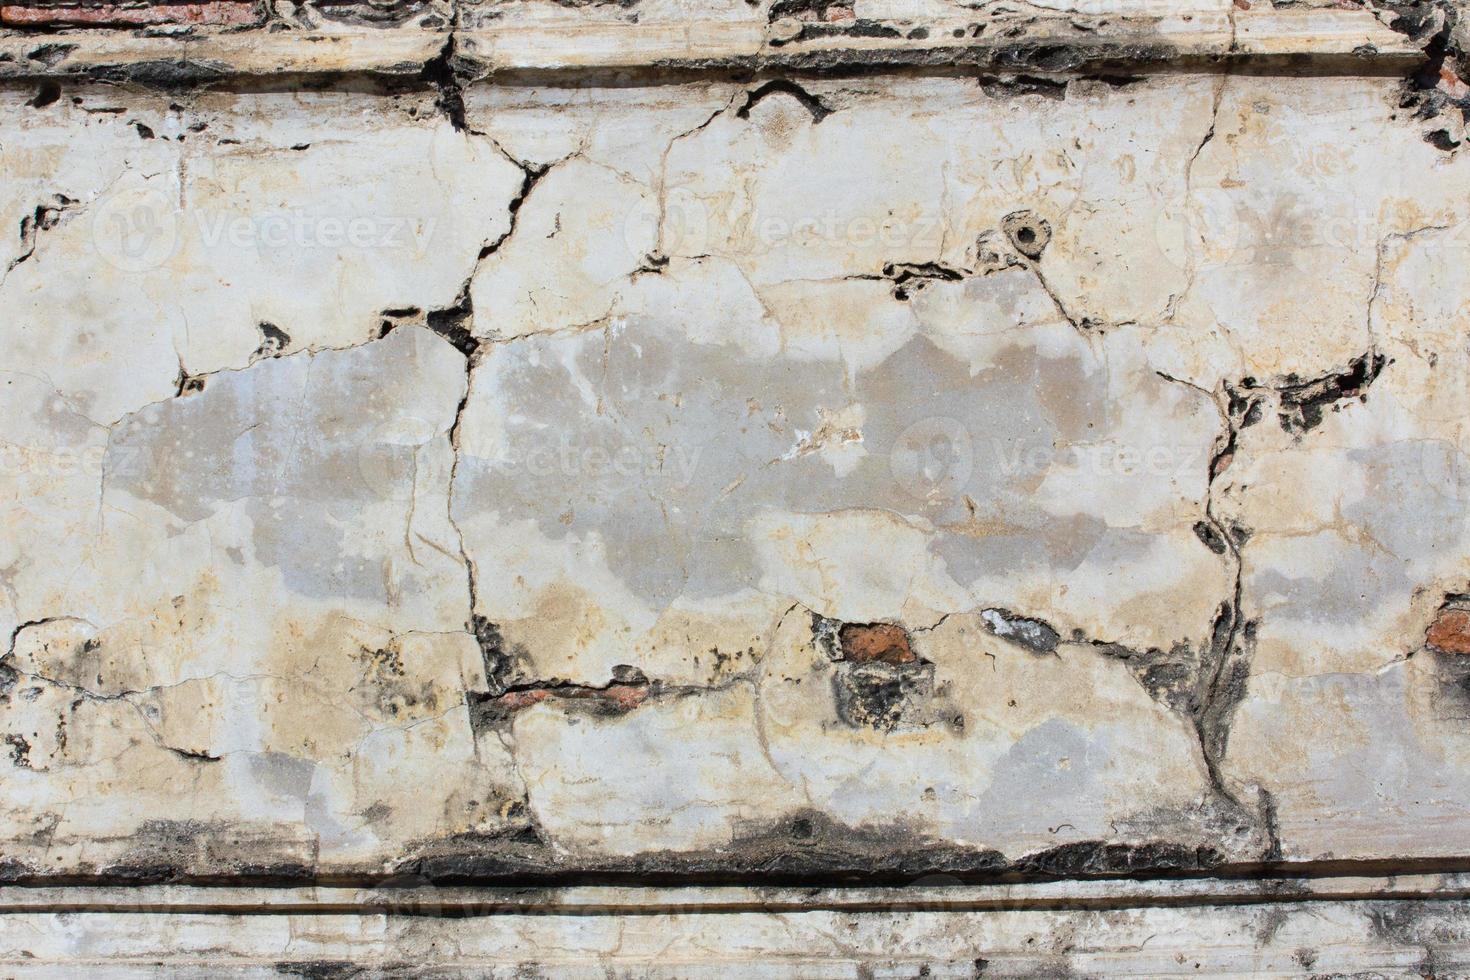 Mur de ciment en béton grunge avec fissure photo